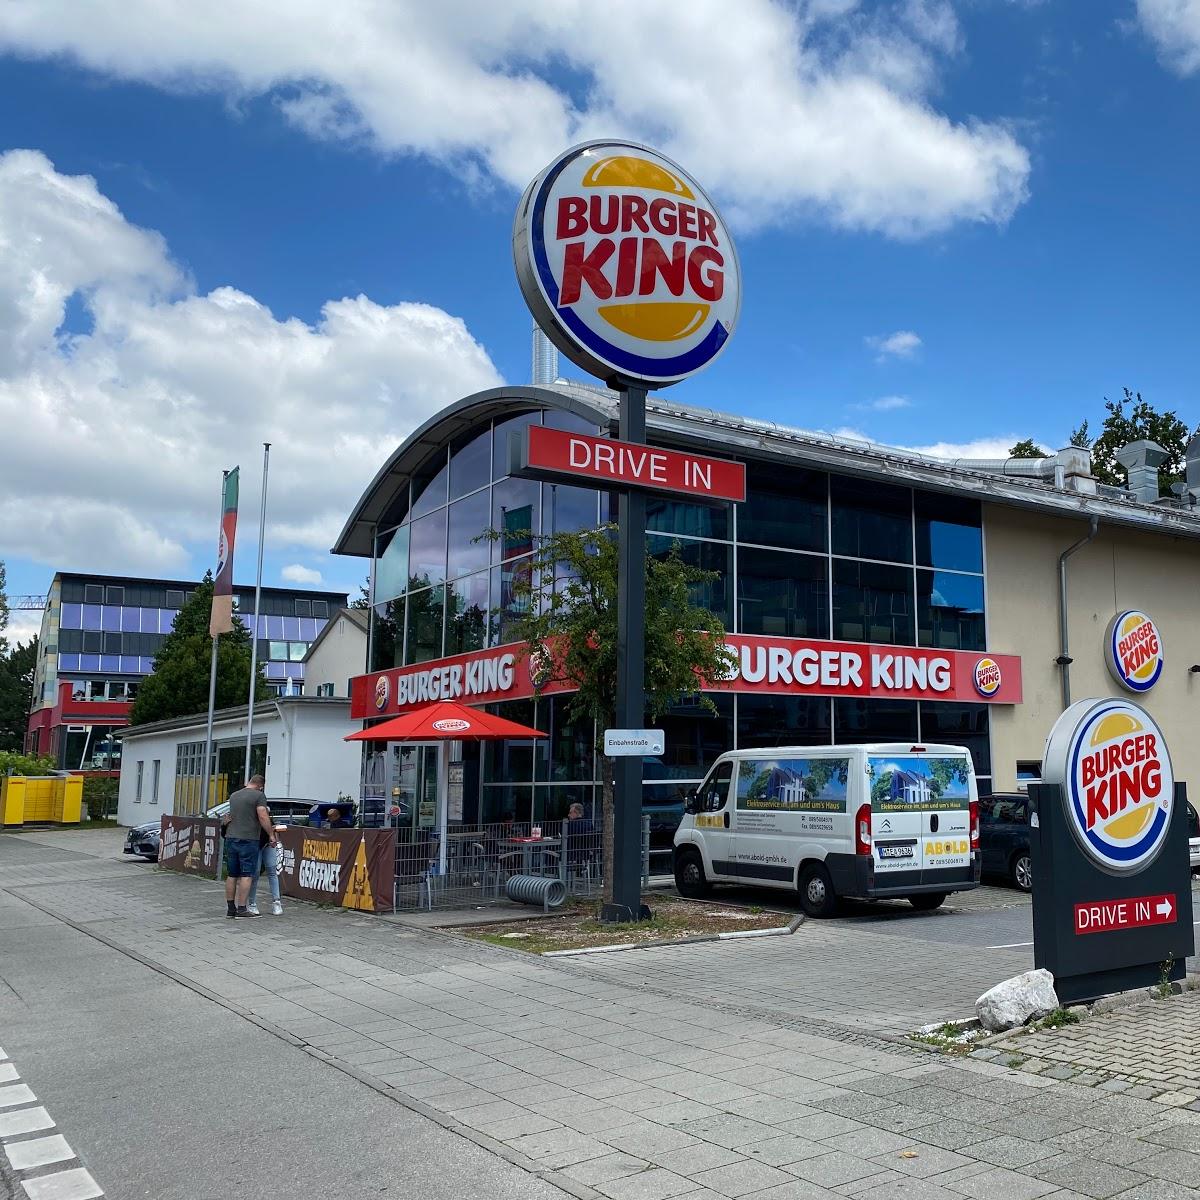 Restaurant "Burger King" in München